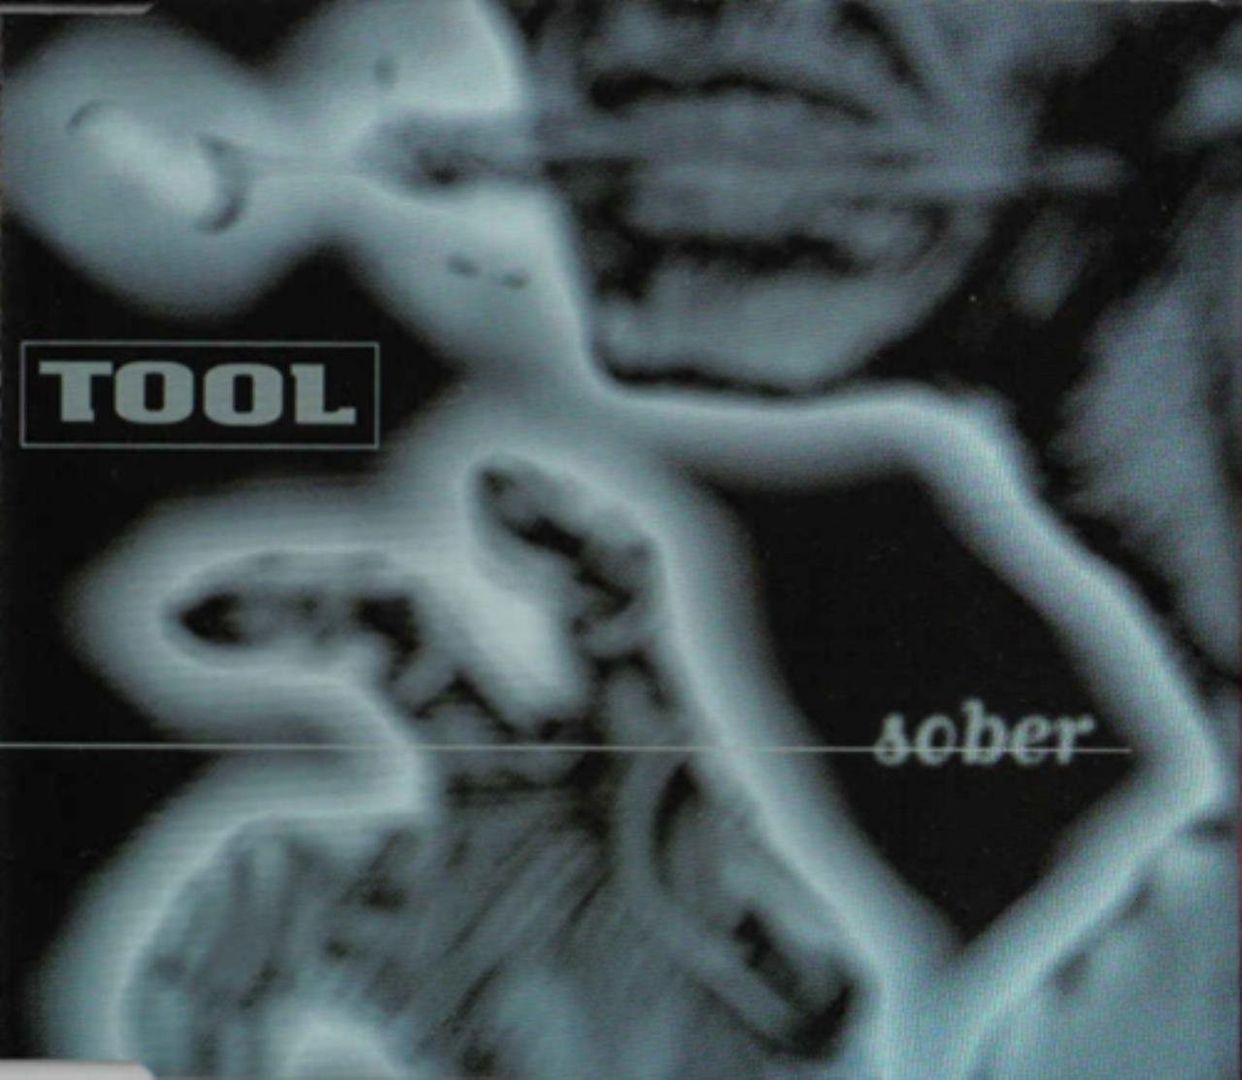 Tool - Sober